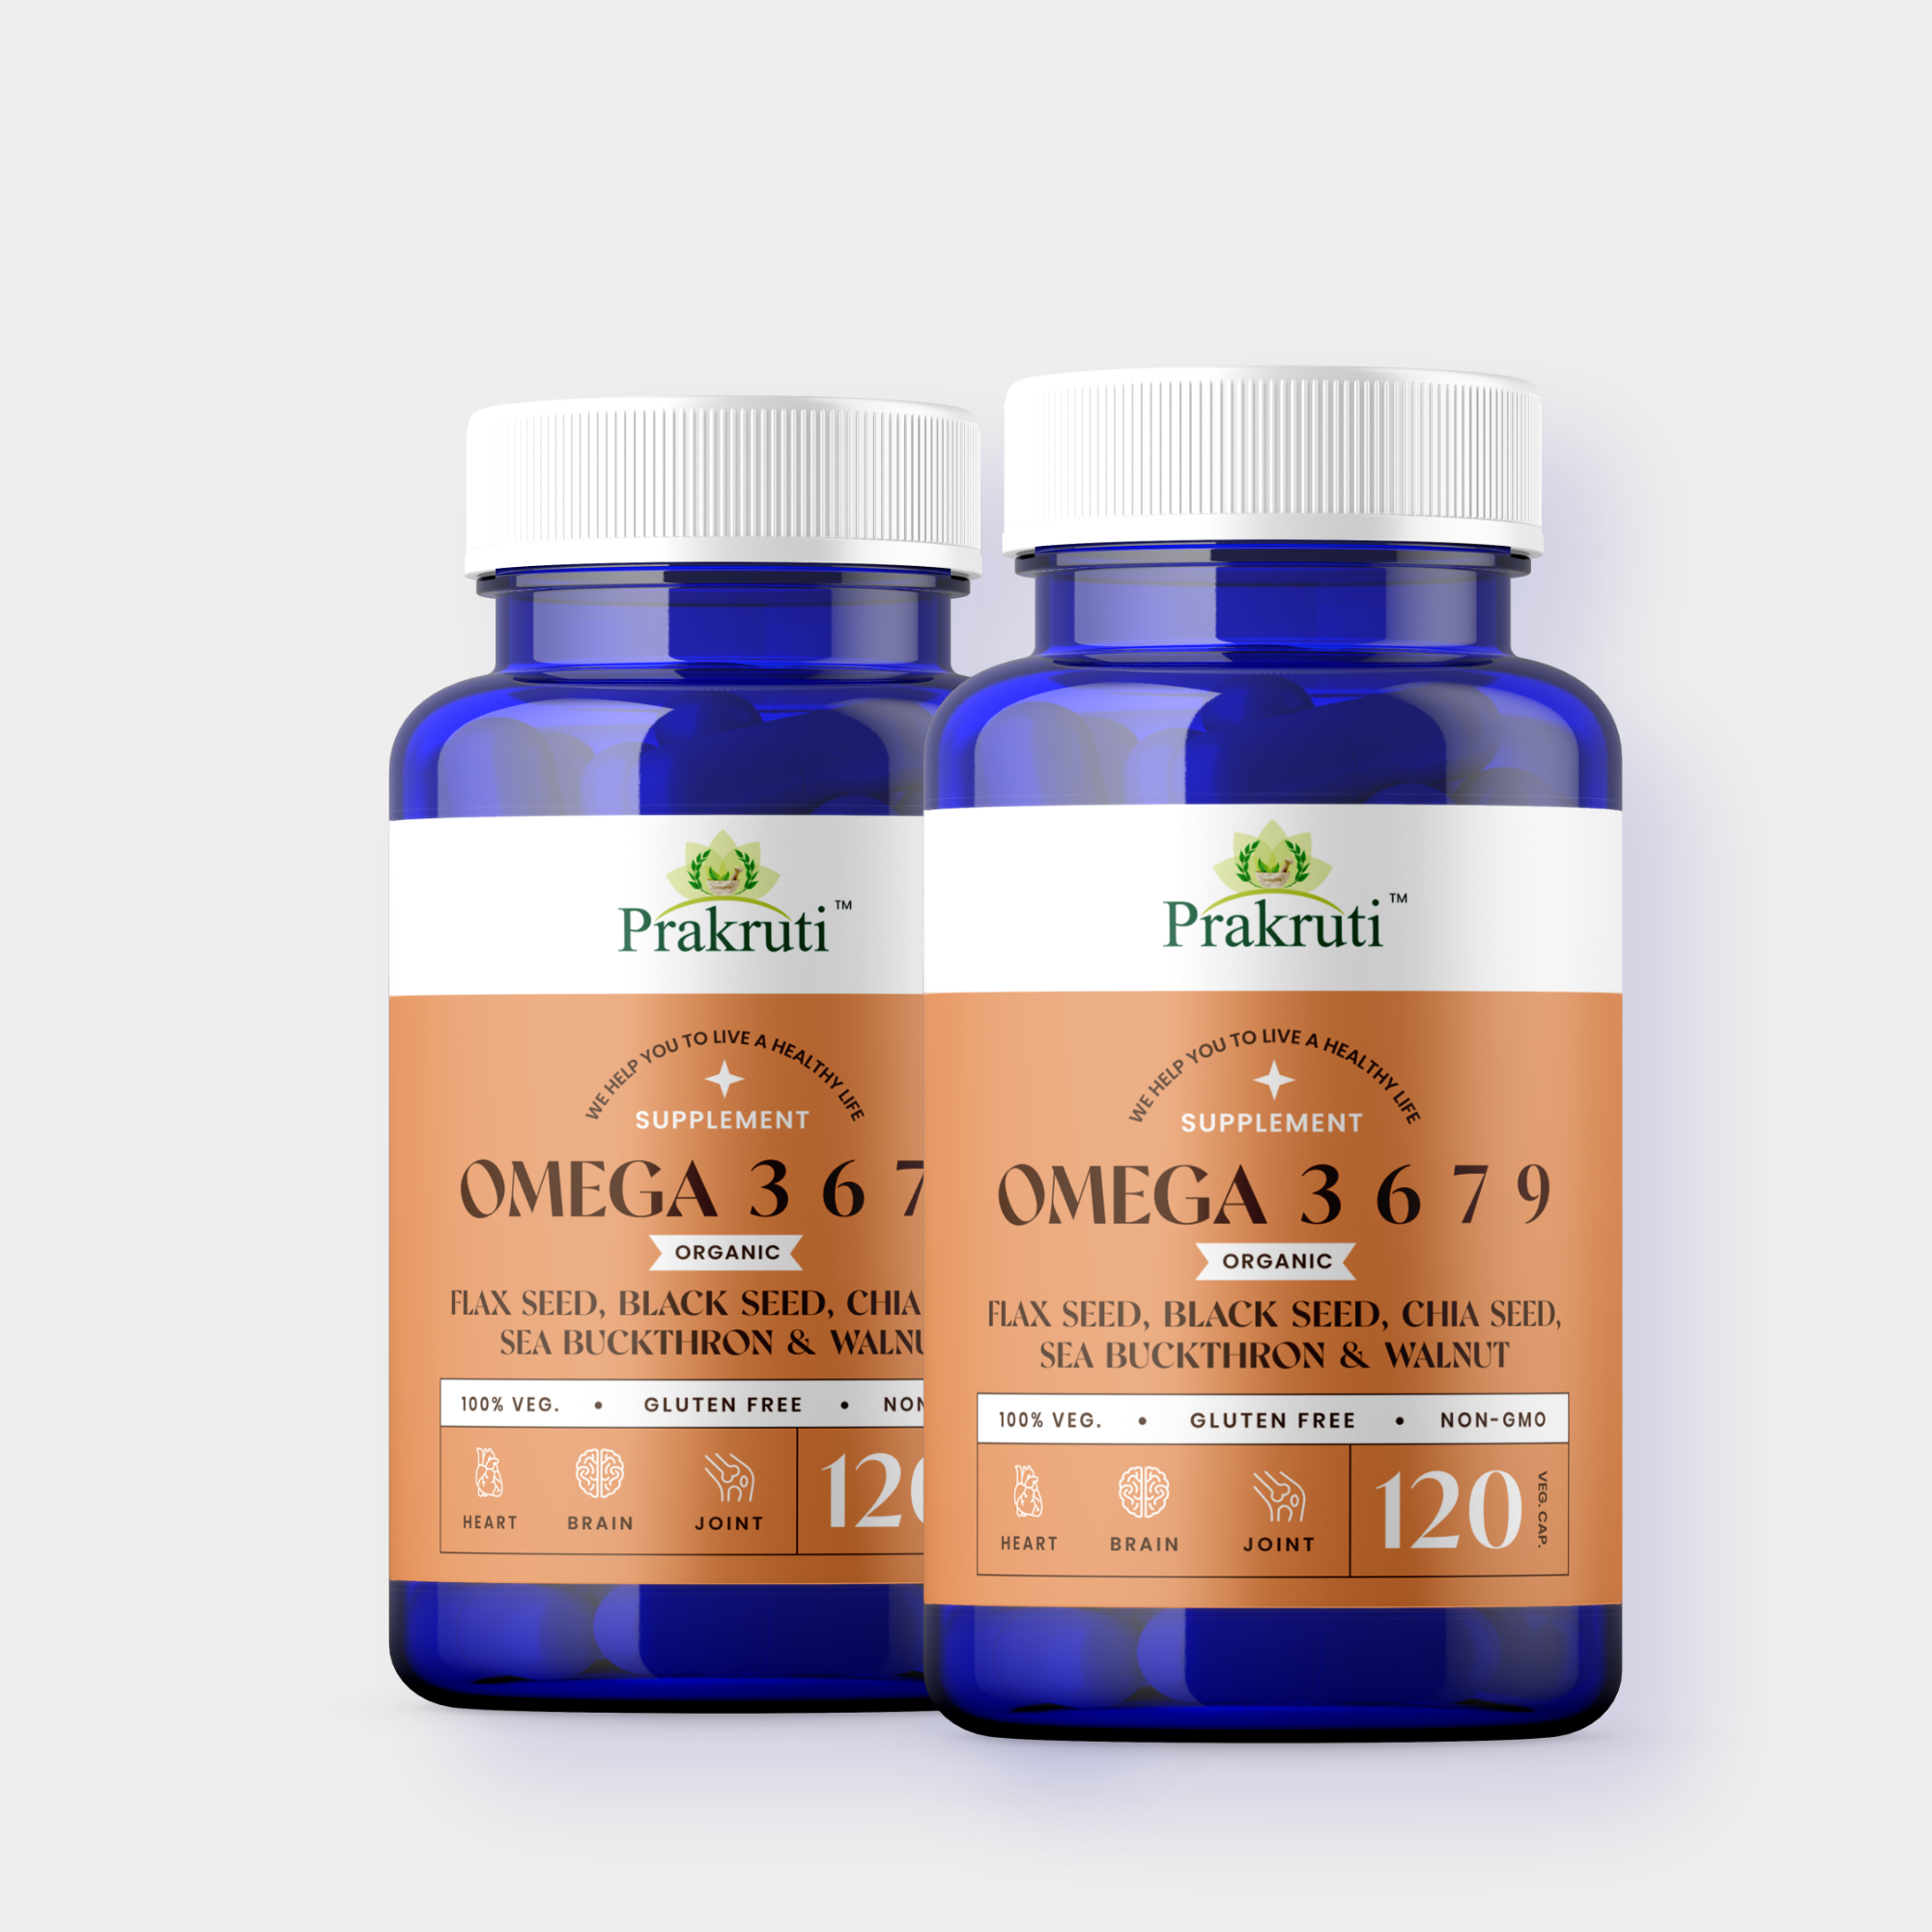 Omega 3 6 7 9 Vegetarian Capsule for Muscle, Bone, Heart and Skin